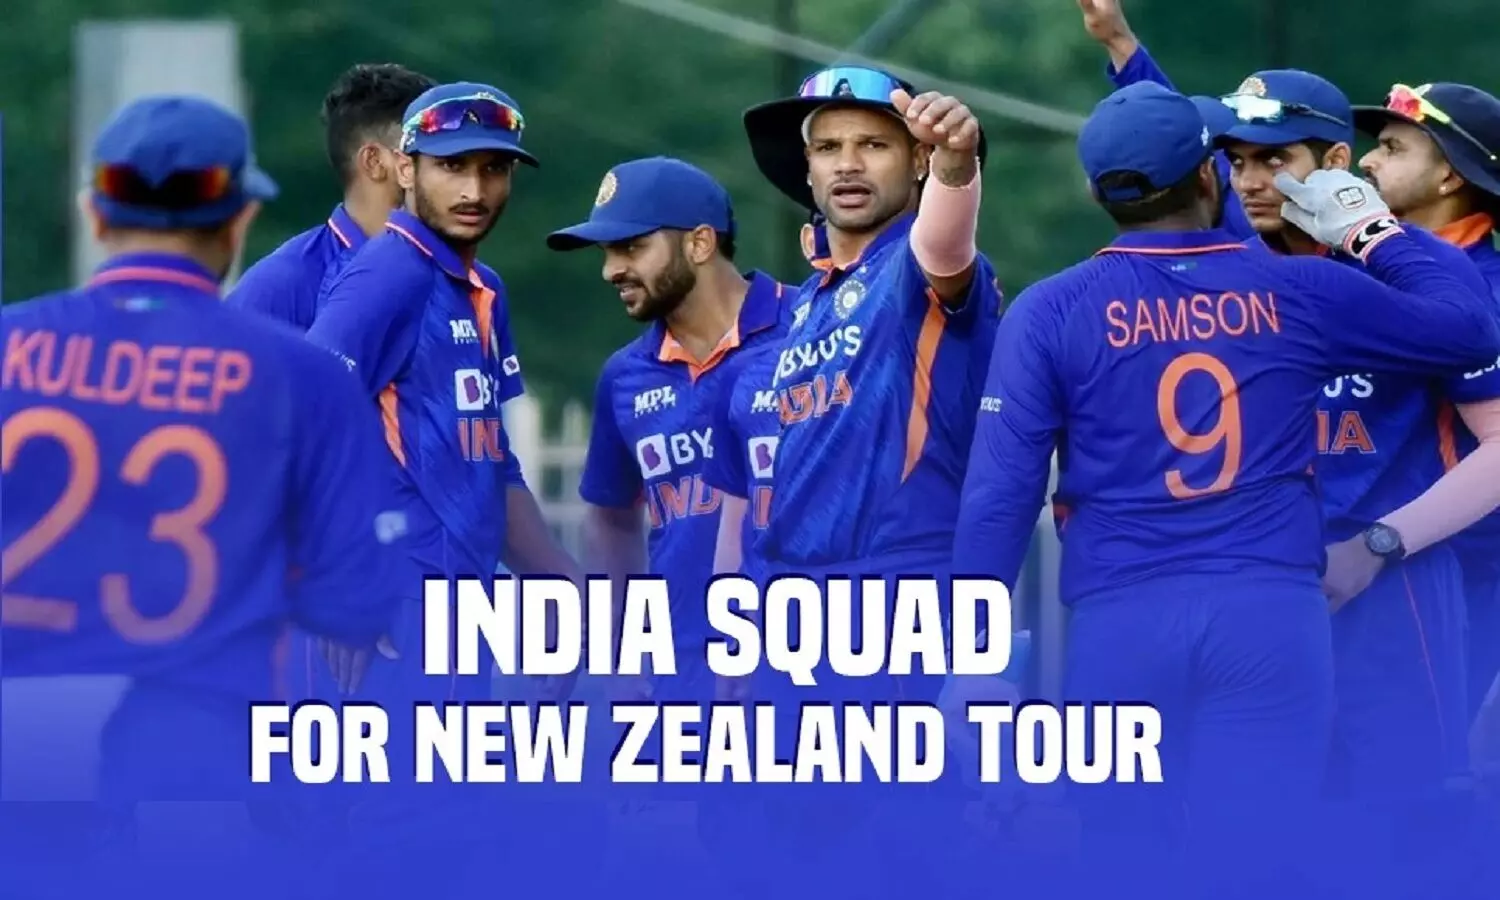 India Vs New Zealand Series 2022 का शेड्यूल, मैच डिटेल, वेन्यू, और स्क्वाड के बारे में सब जानें